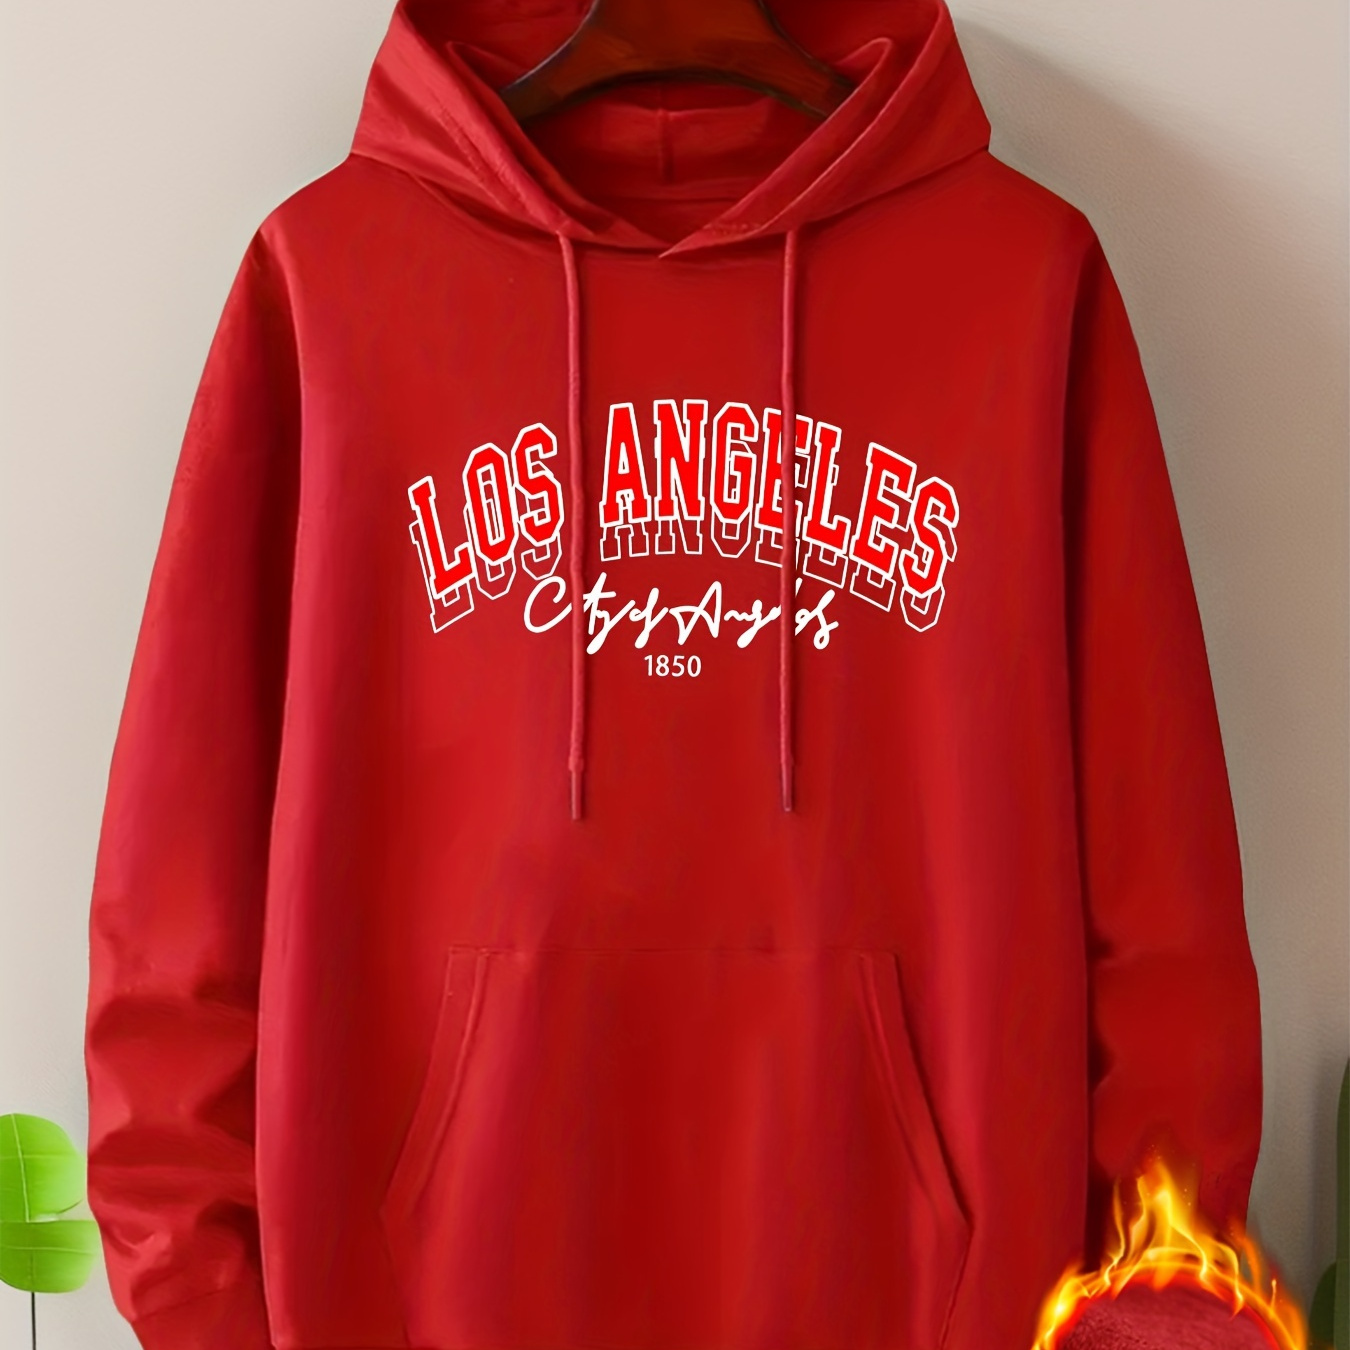 

Fleece Los Angeles Print Kangaroo Pocket Hoodie, Casual Long Sleeve Hoodies Sweatshirt, Men's Clothing, For Fall Winter